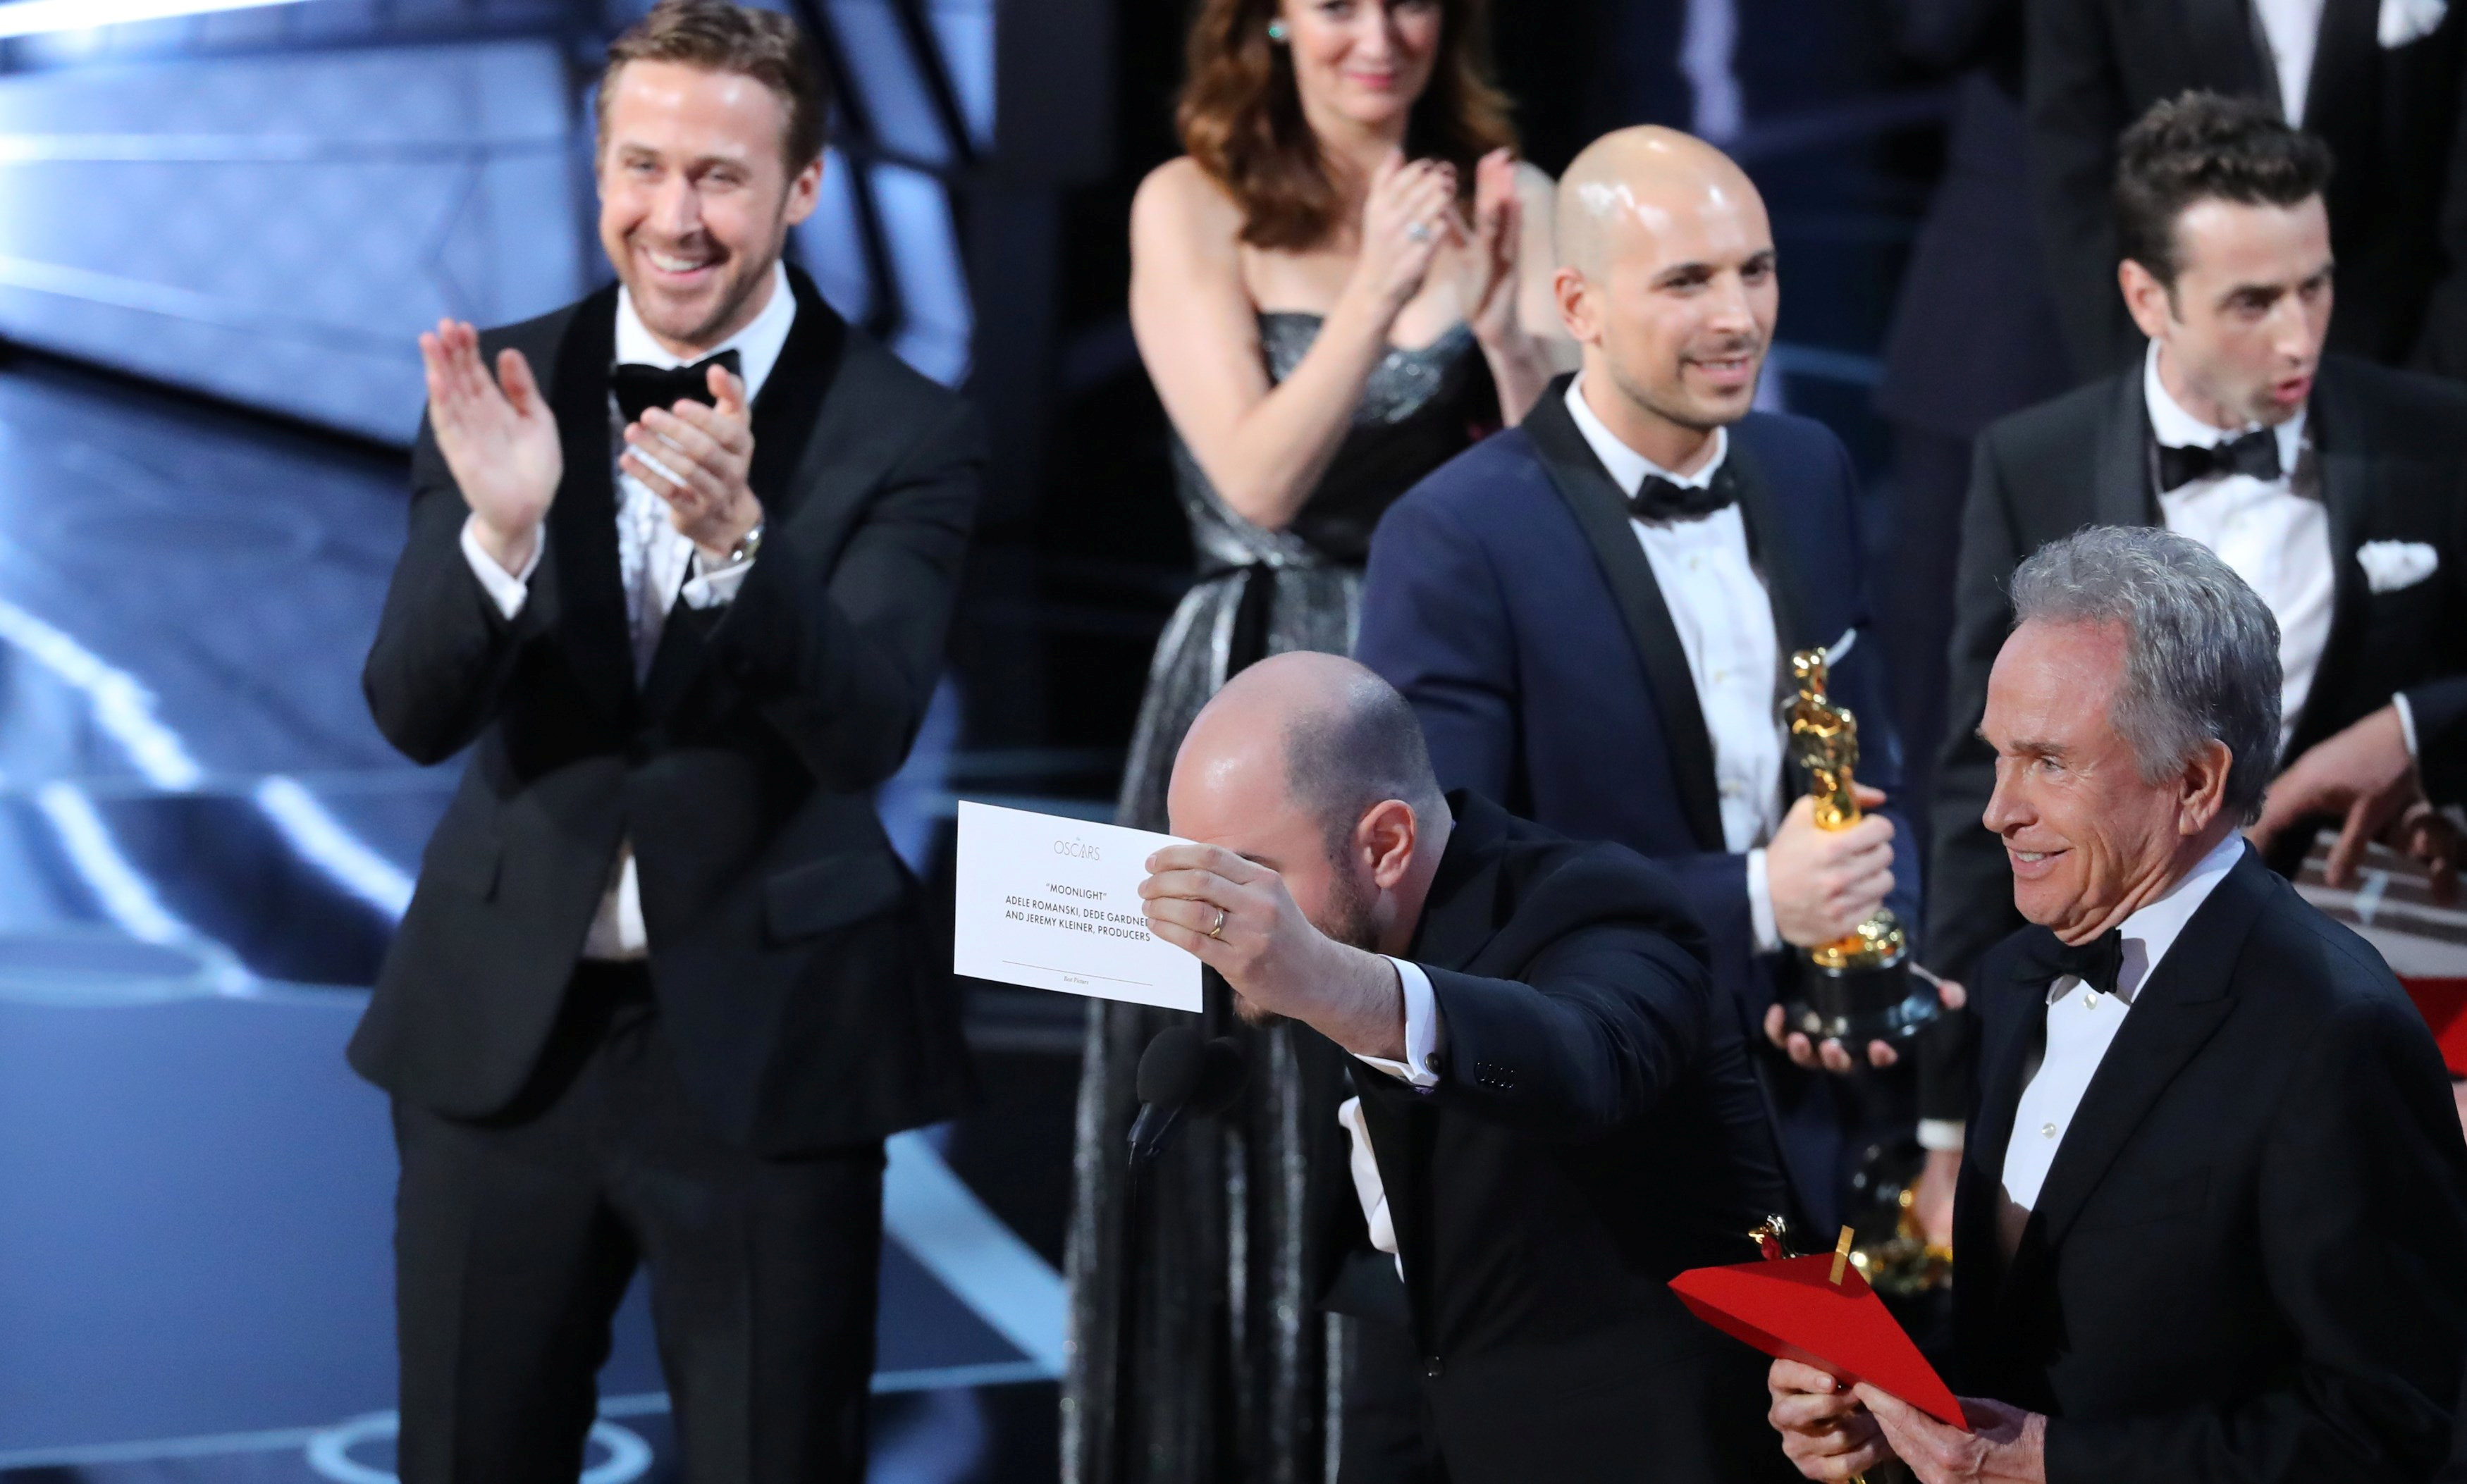 El productor Jordan Horowitz muestra la tarjeta que contienen el nombre de la película ganadora a su derecha está el presentador Warren Beatty que erróneamente dijo el nombre de otra película. (Reuters)